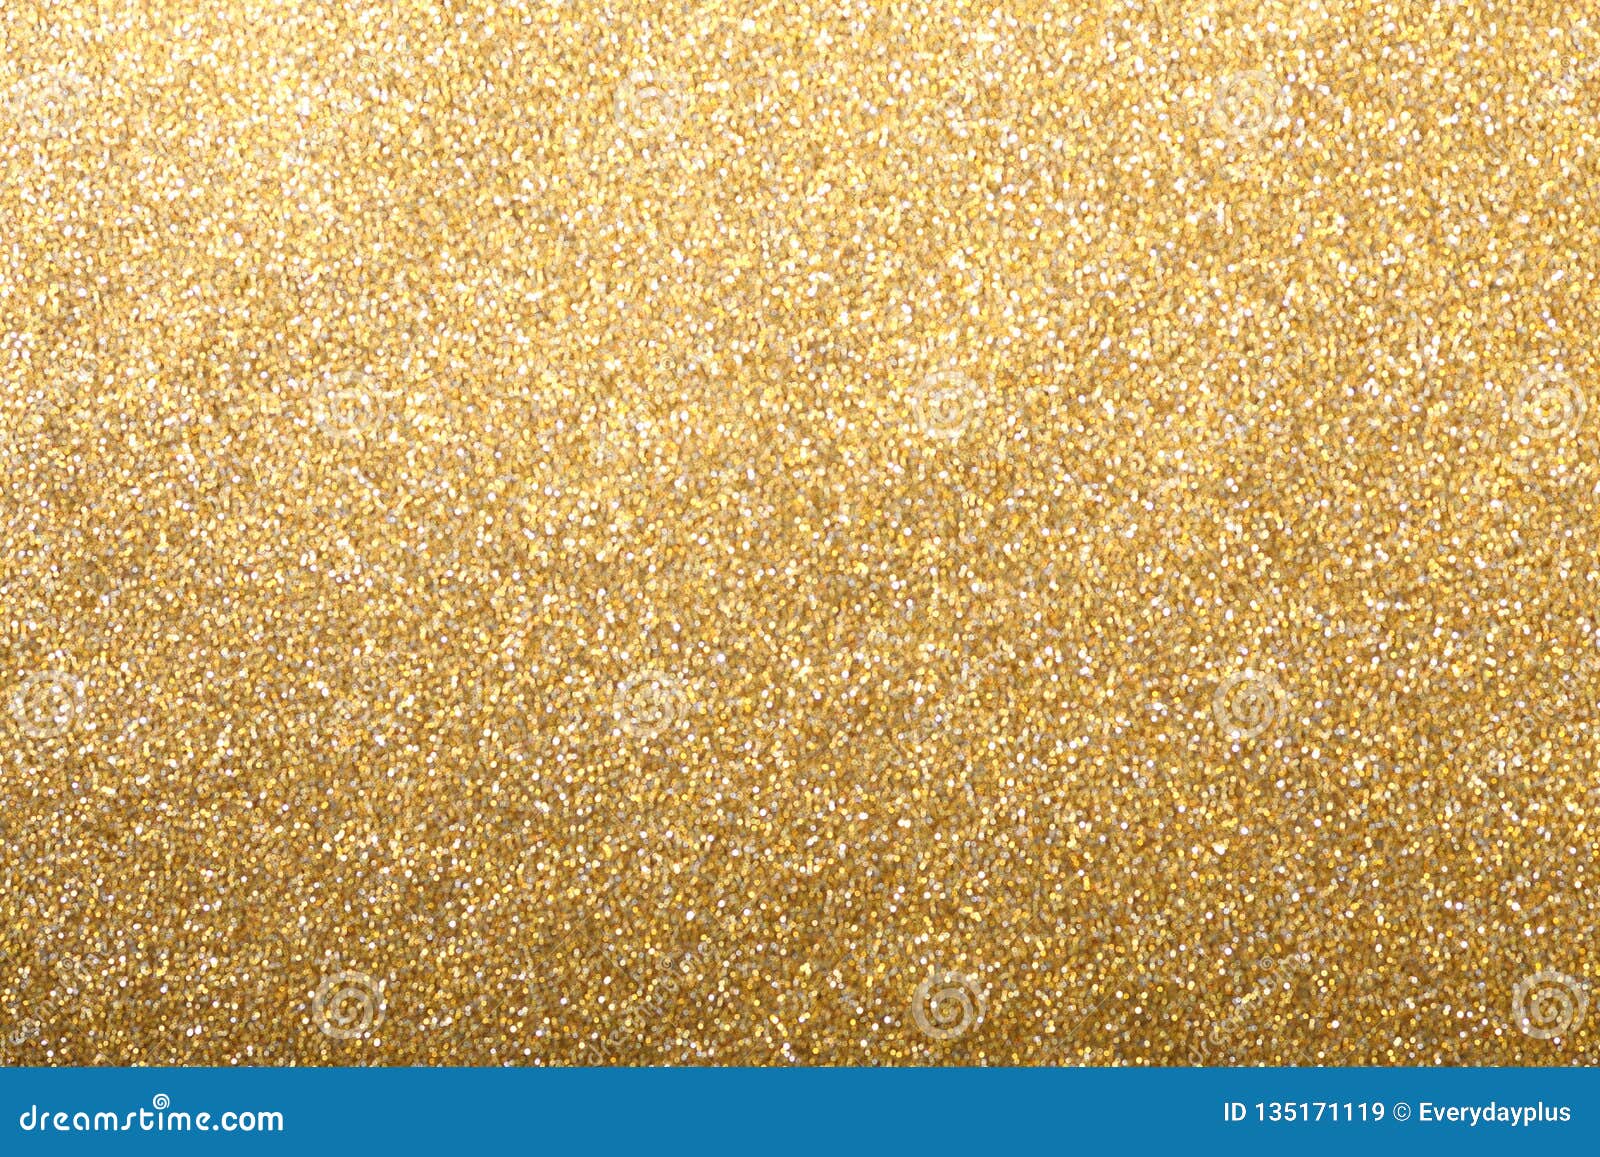 金子闪烁闪闪发光背景 库存图片. 图片 包括有 季节, 金子, 庆祝, 高级, 作用, 蓝蓝, 精采, 尘土 - 112691079